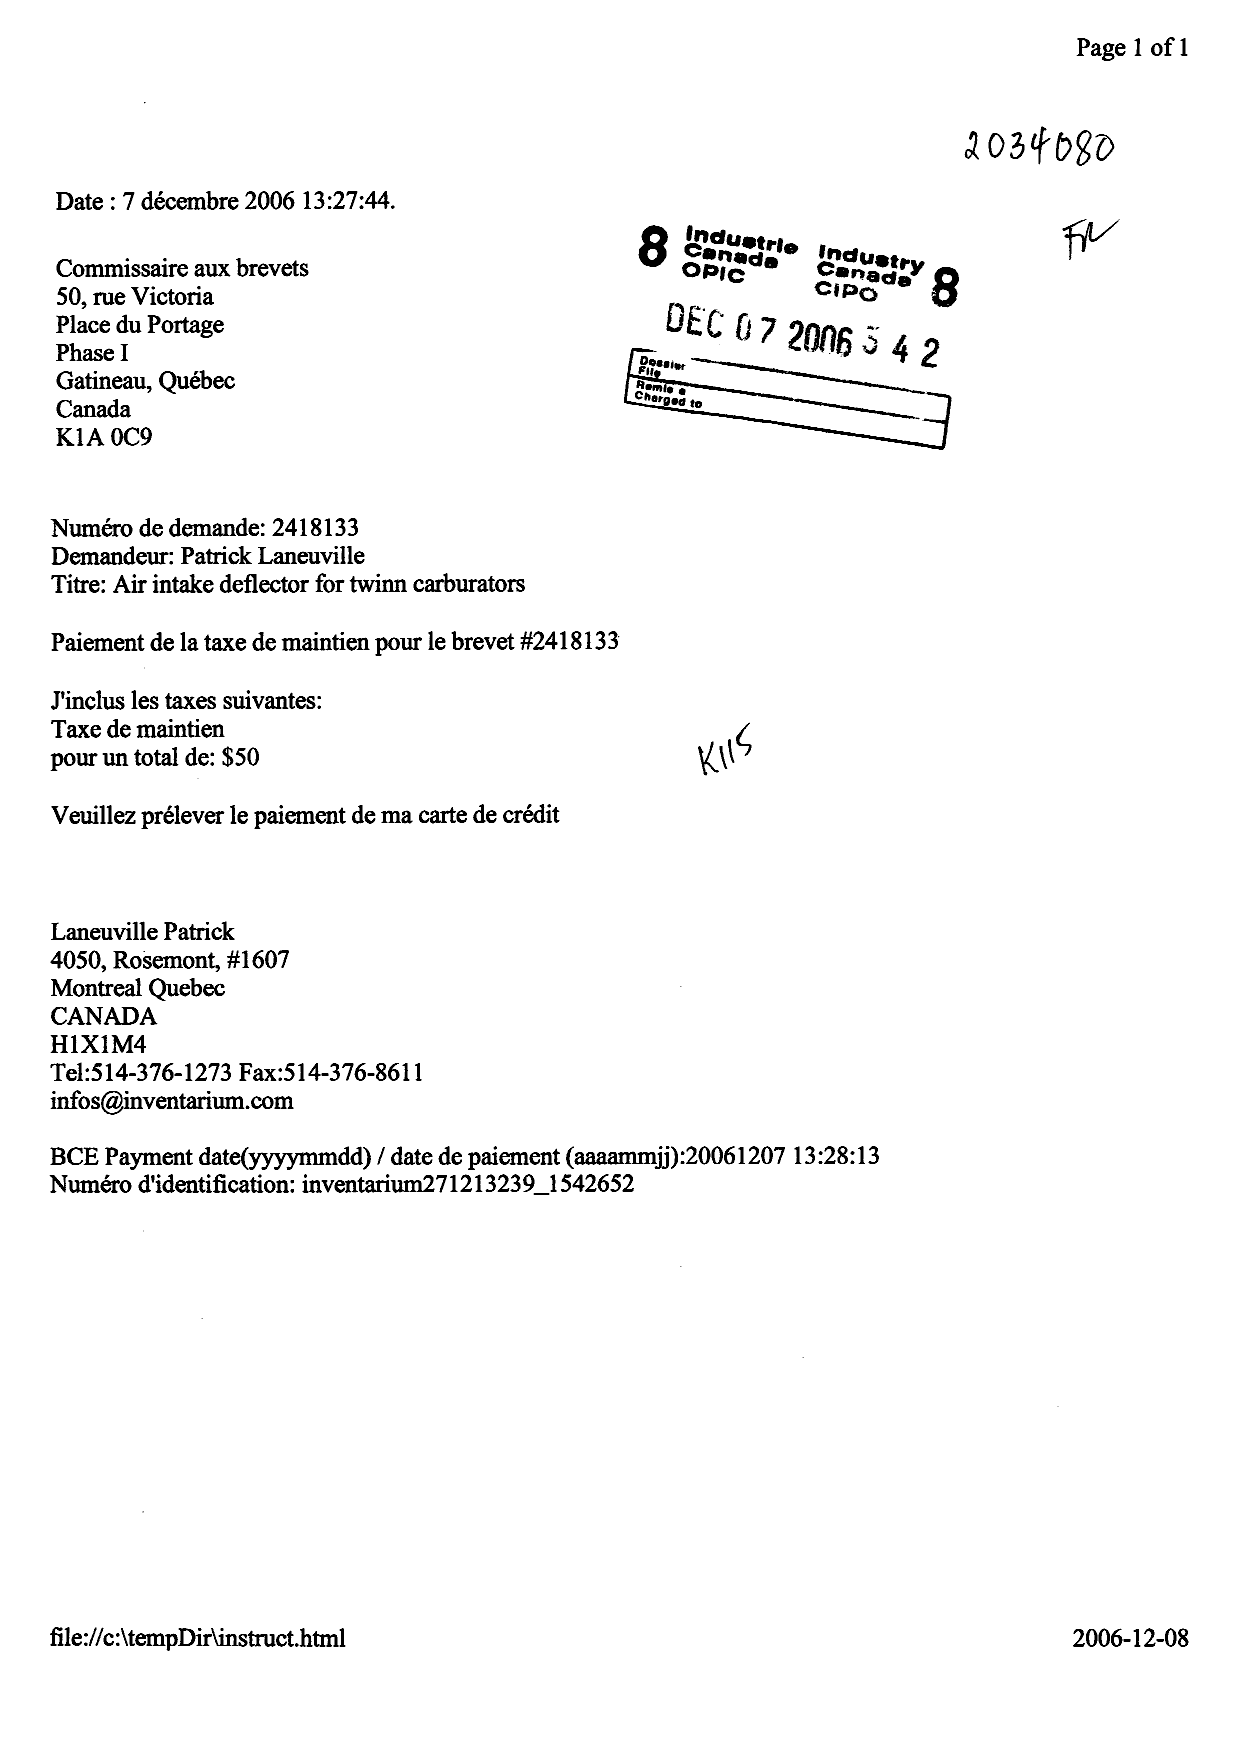 Document de brevet canadien 2418133. Taxes 20051207. Image 1 de 1